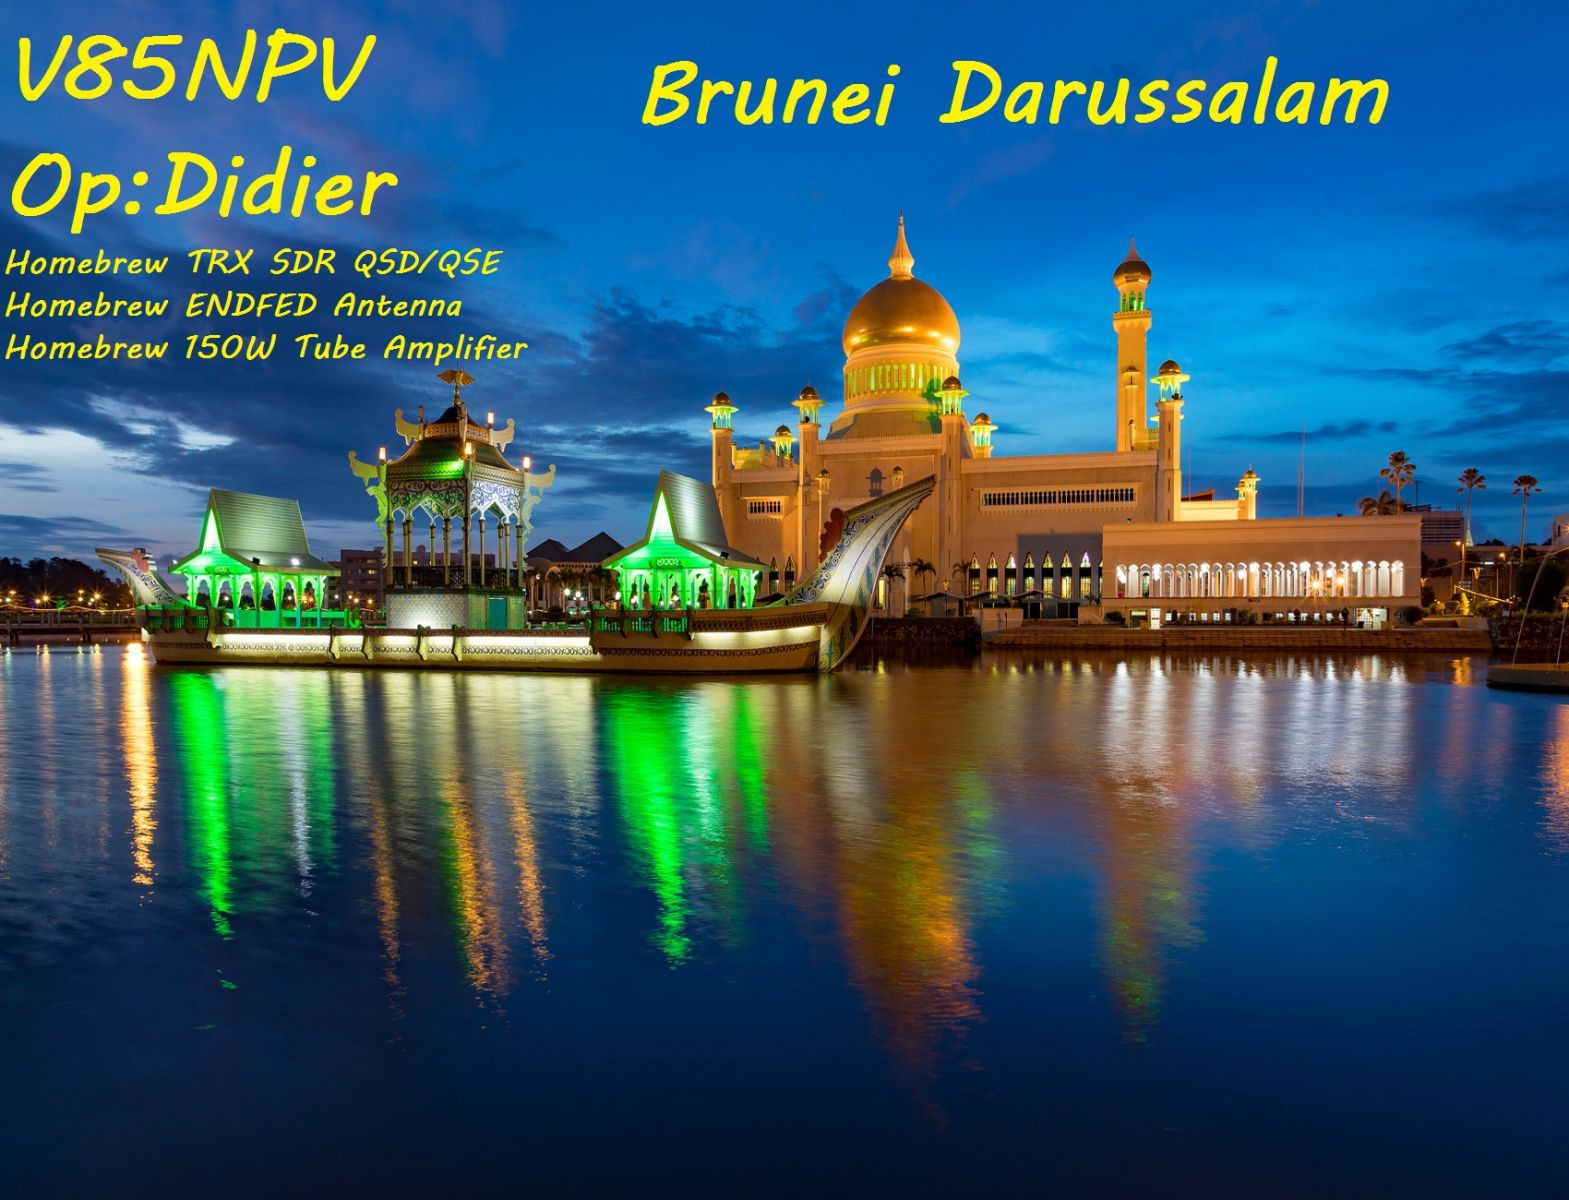 V85NPV - Brunei